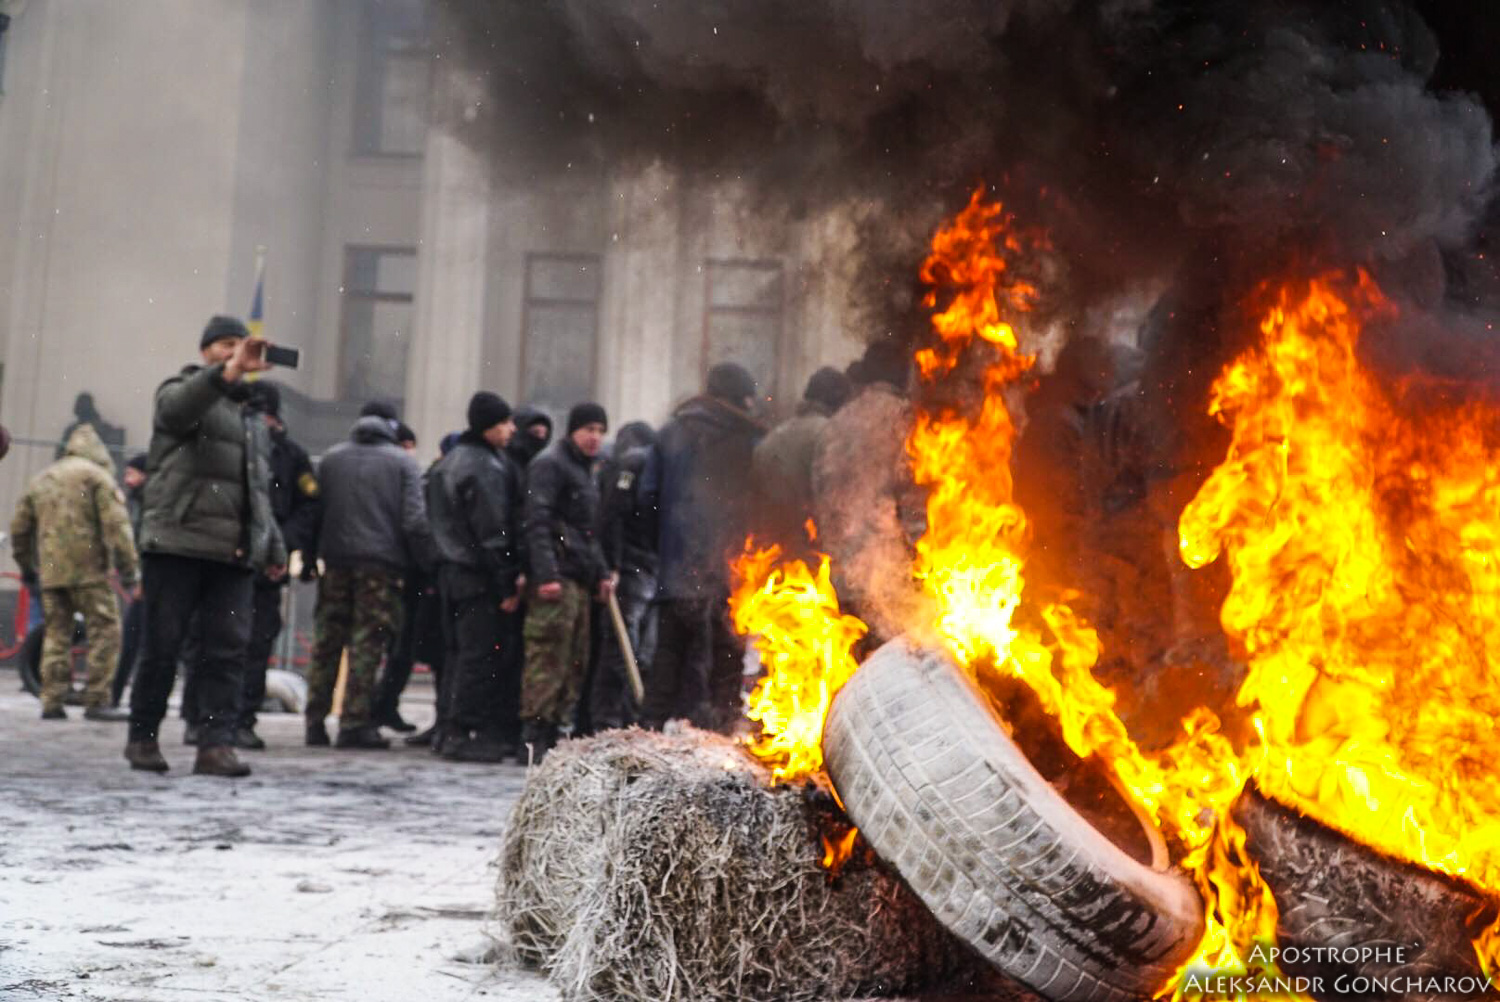 Ukraine - Ukraine News in brief. Tuesday 16 January. [Ukrainian sources] Fb446553efff9a28564a0e3676e0edf9